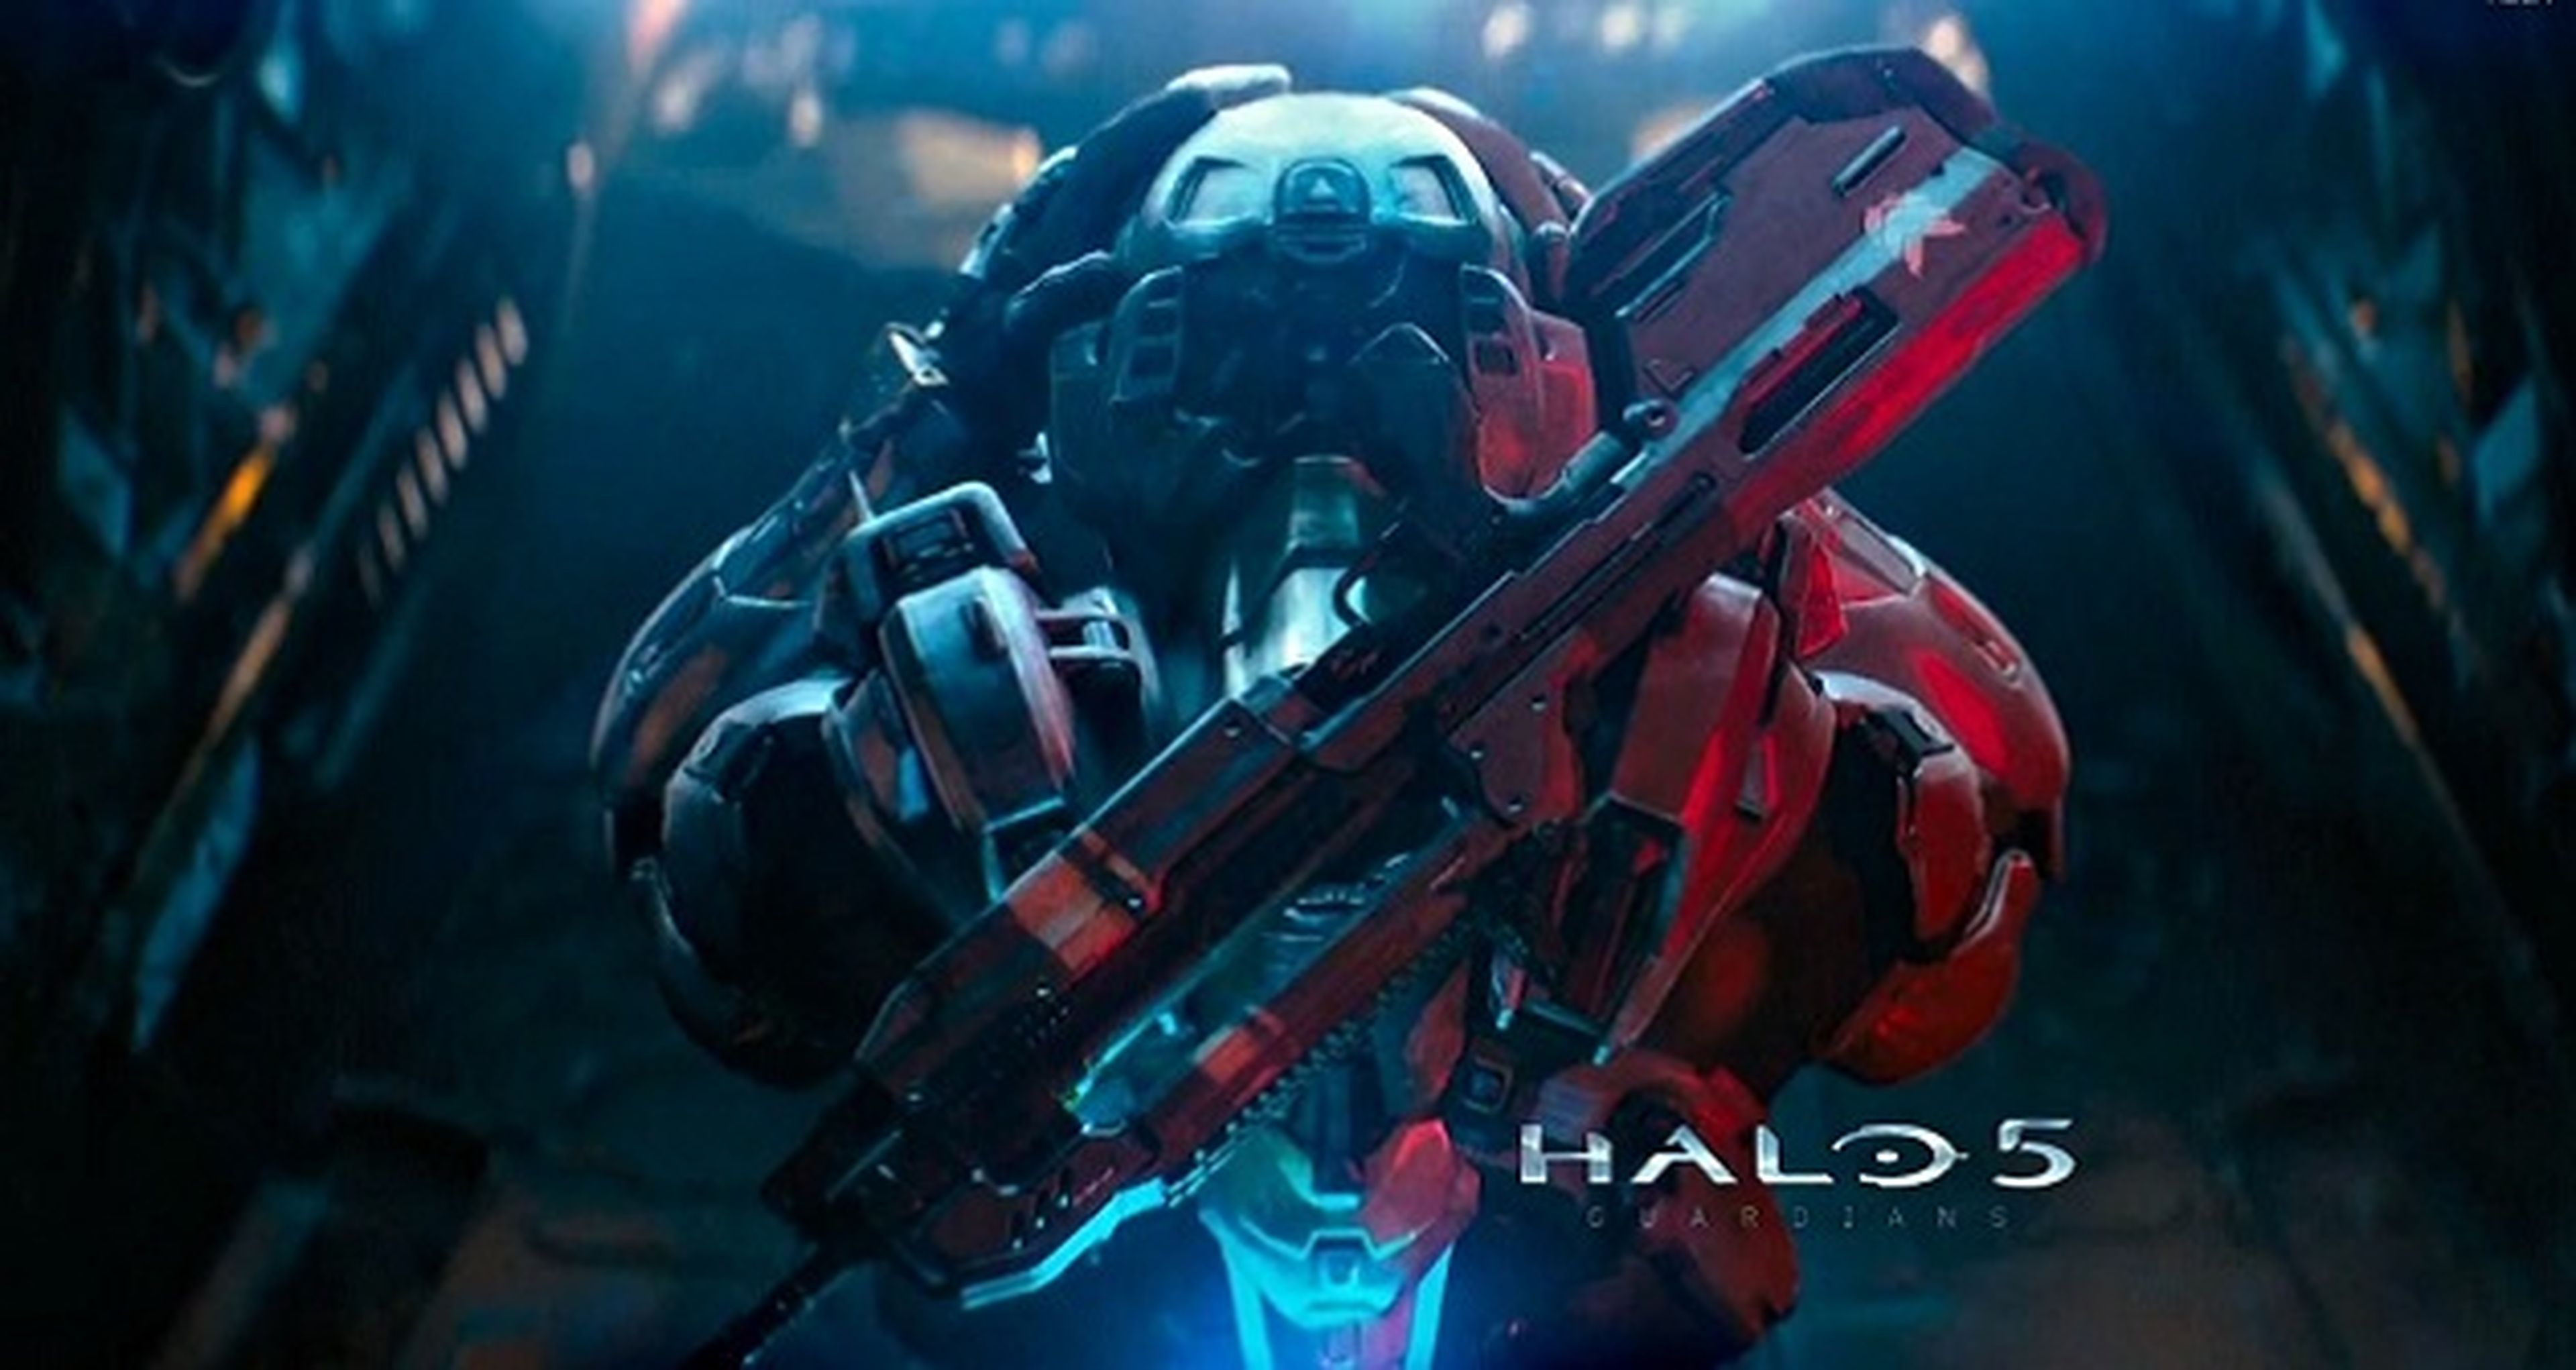 Xbox One tendrá una edición especial con Halo 5: Guardians